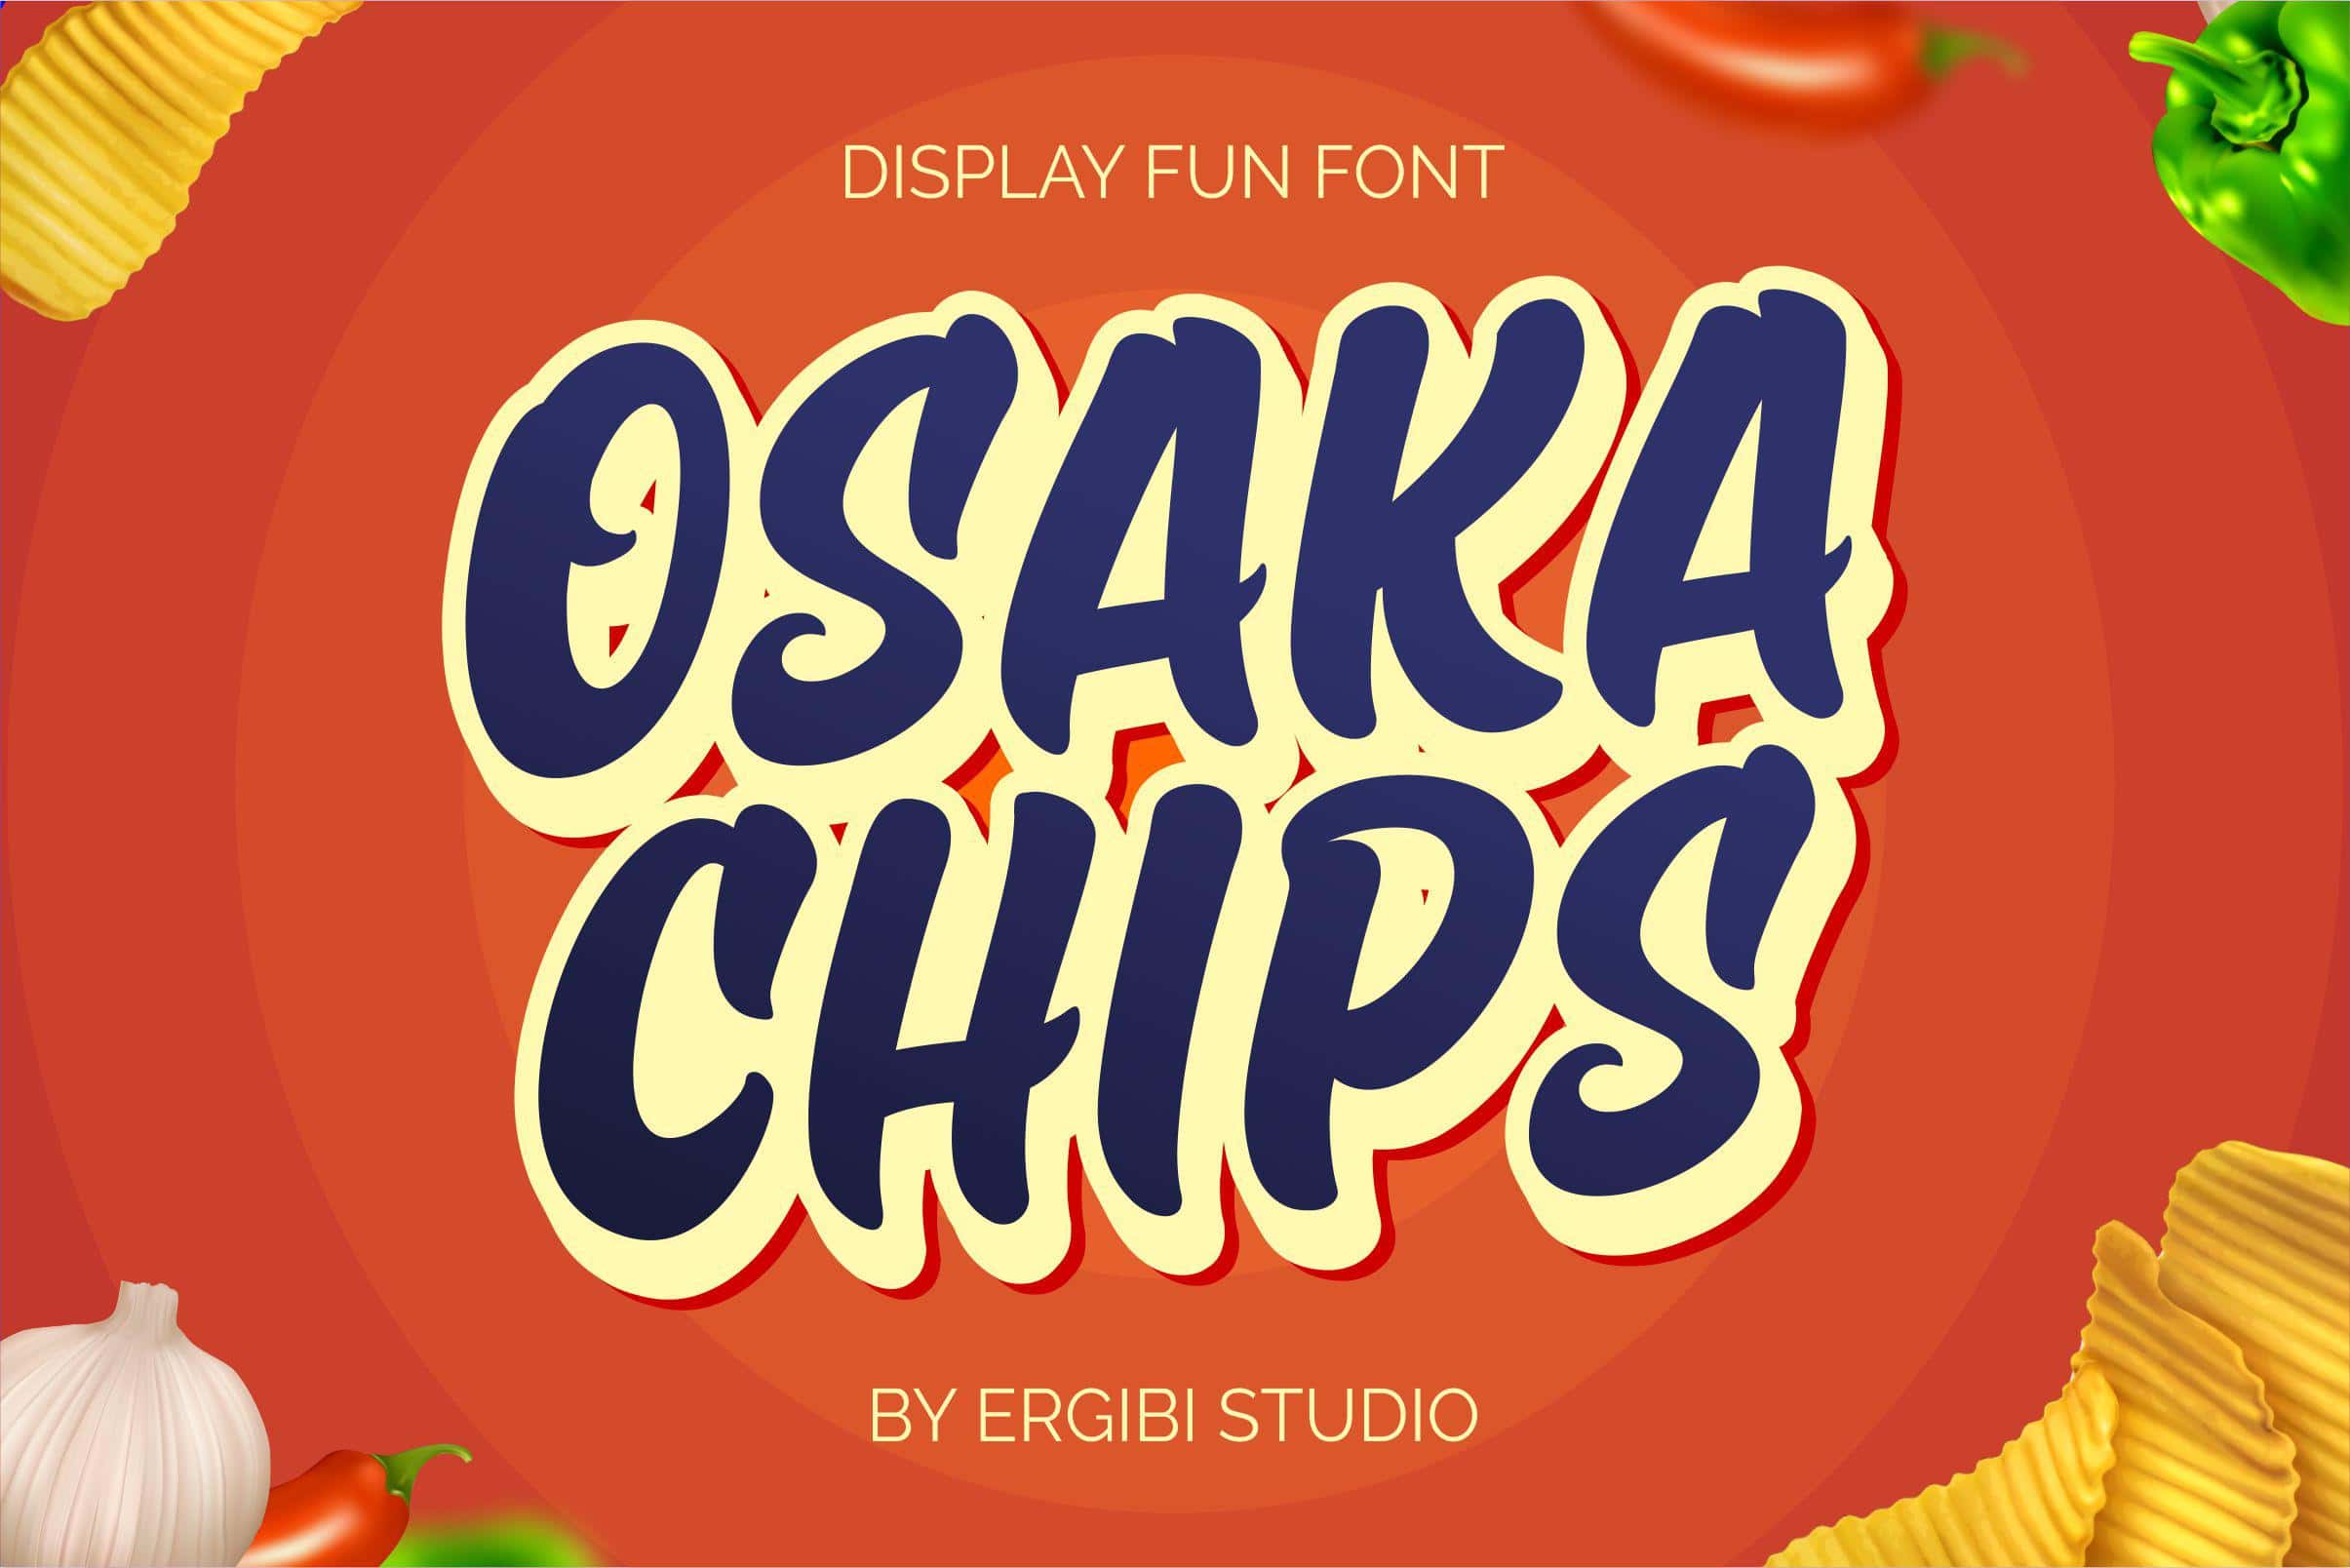 Osaka Chips Font